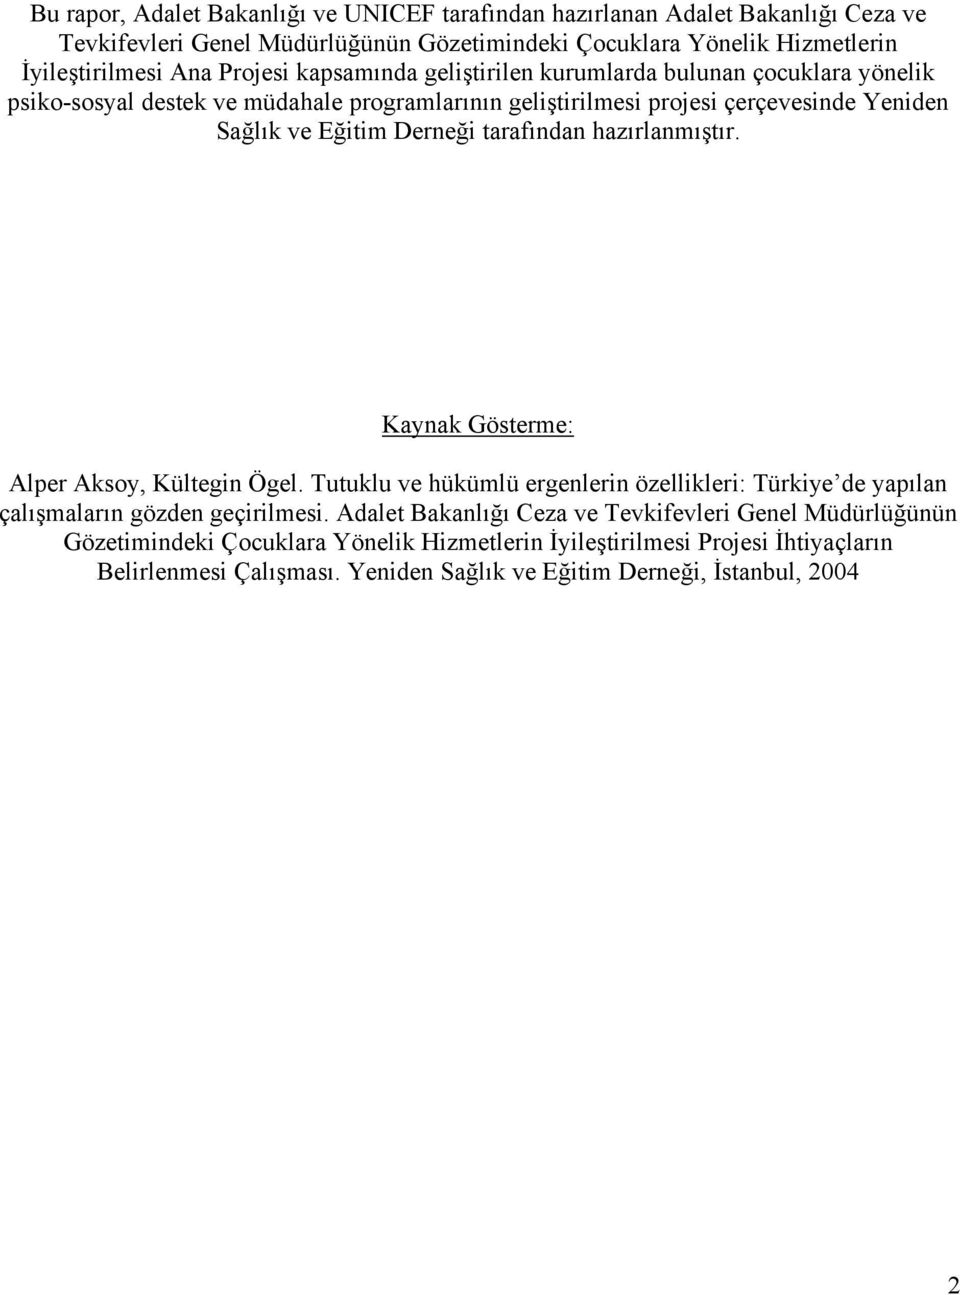 tarafından hazırlanmıştır. Gösterme: Alper Aksoy, Kültegin Ögel. Tutuklu ve hükümlü ergenlerin özellikleri: Türkiye de yapılan çalışmaların gözden geçirilmesi.